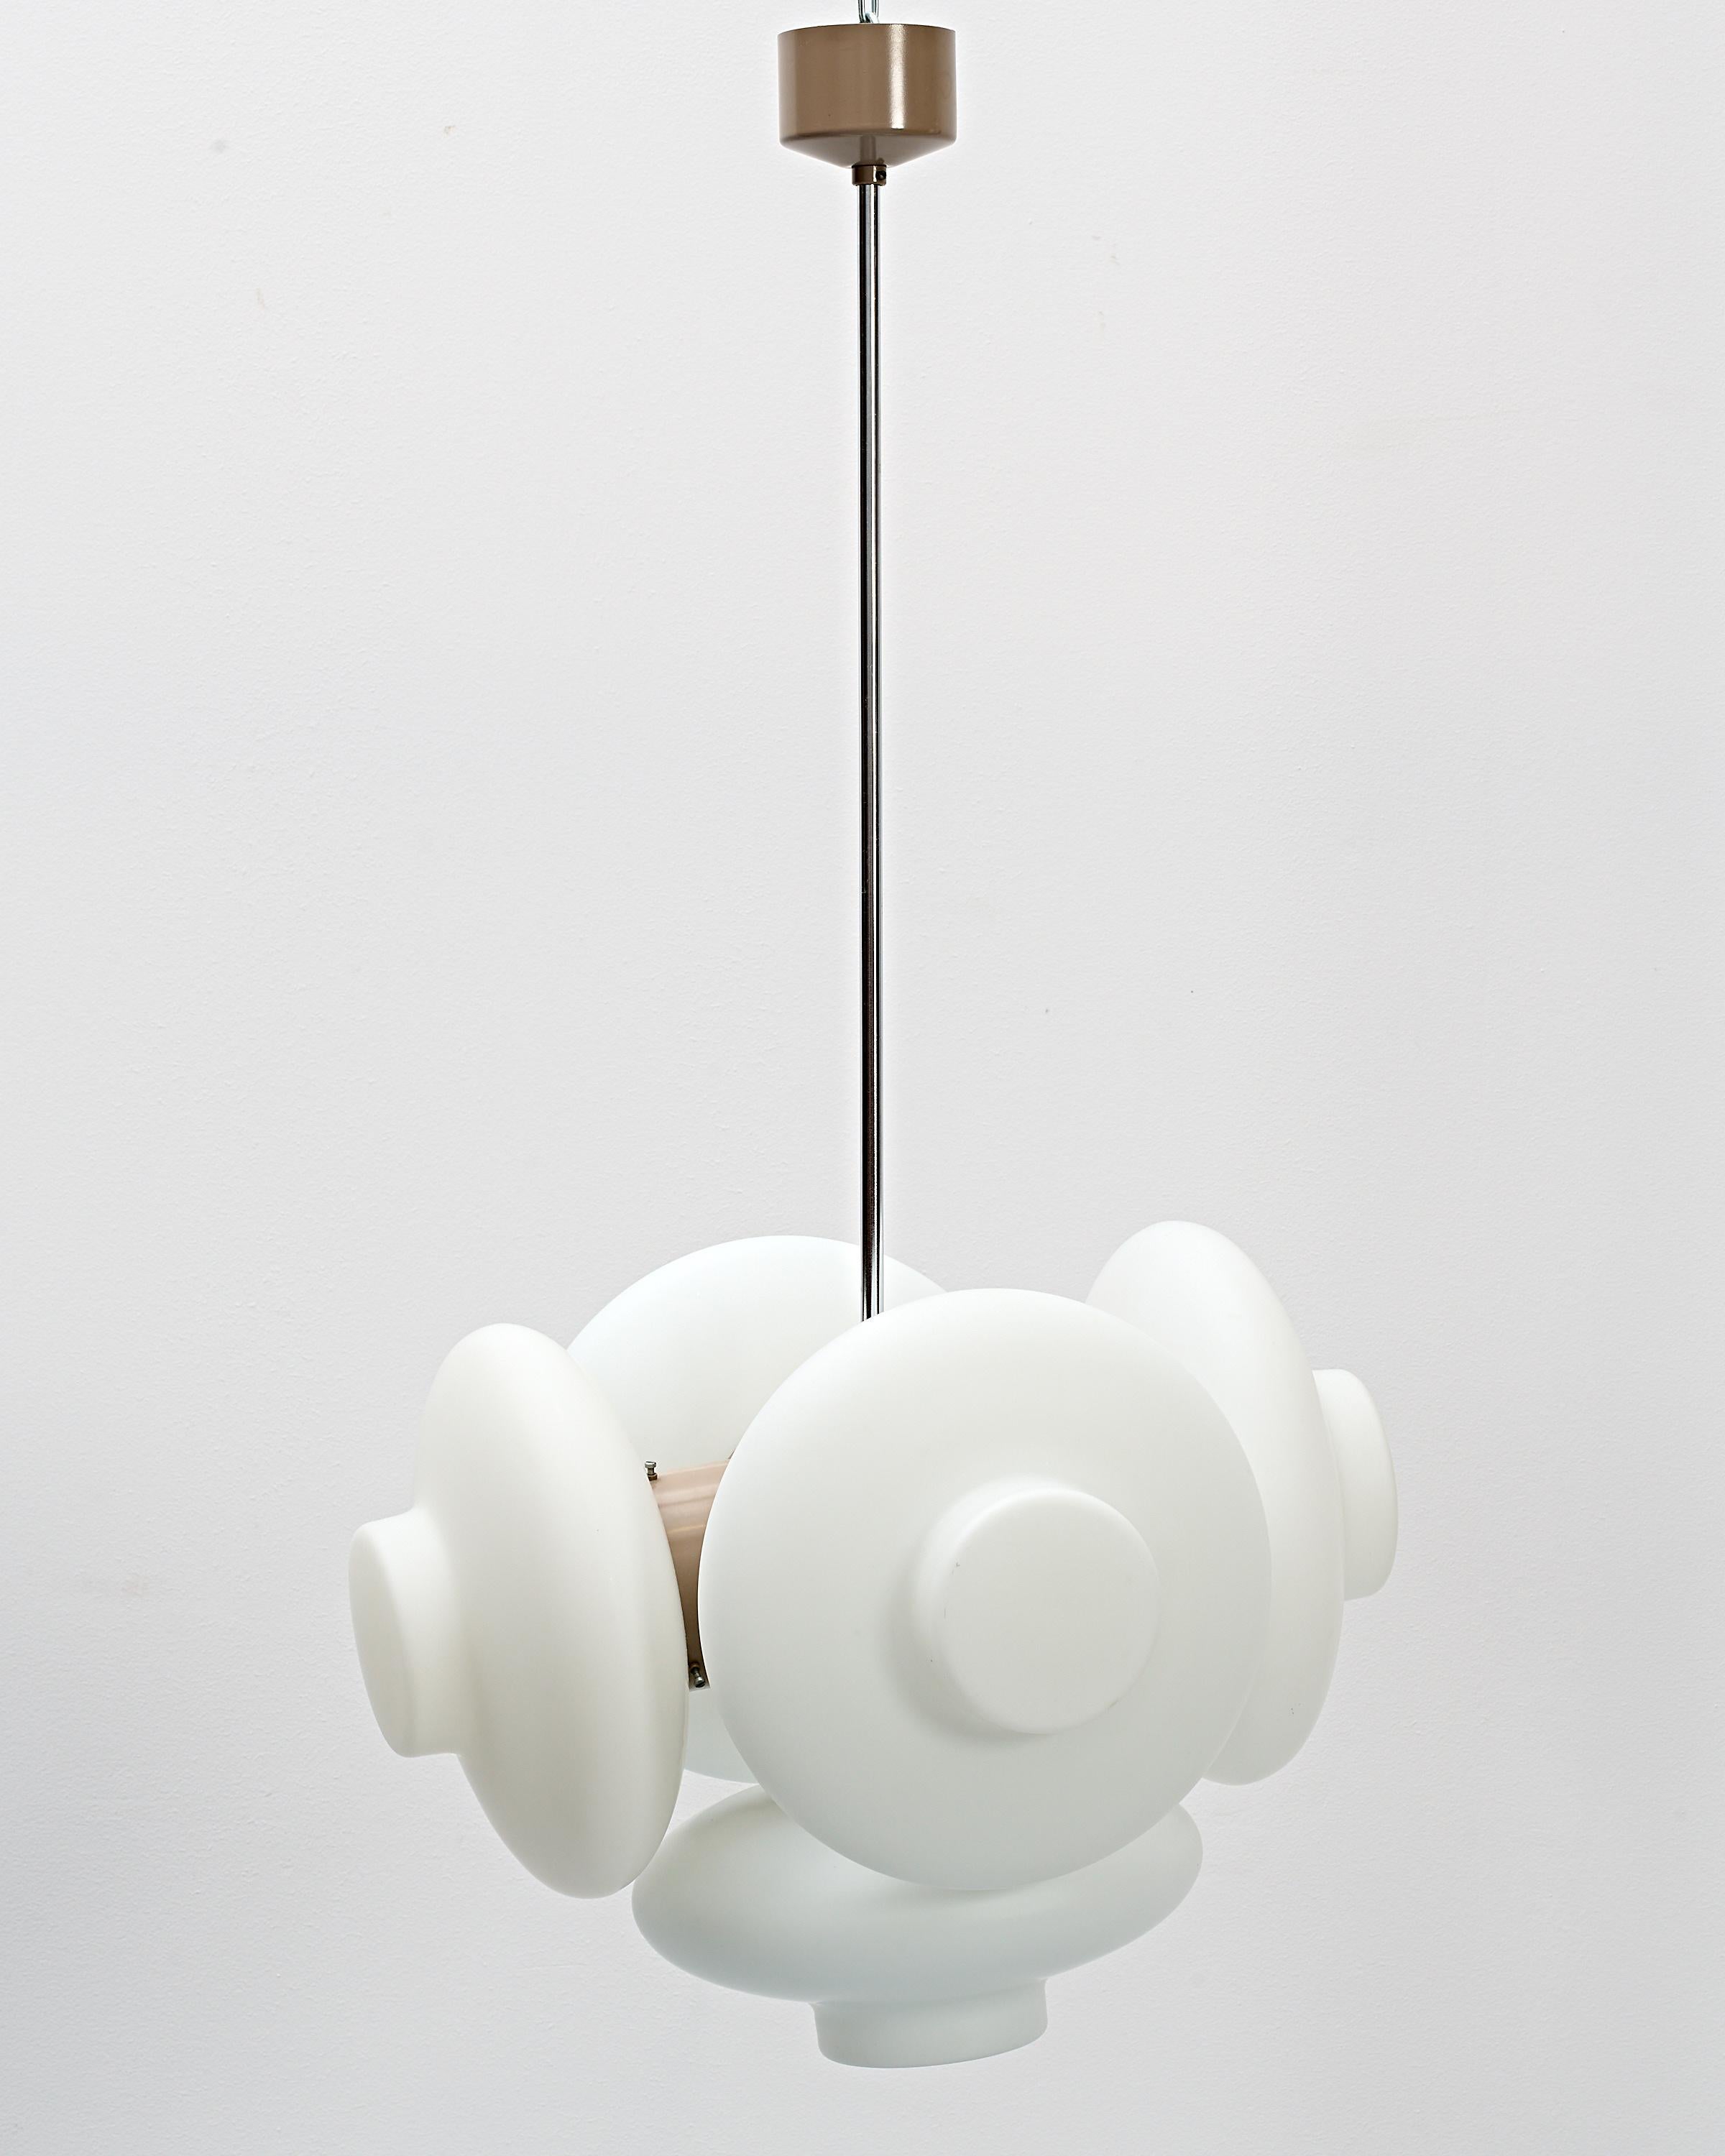 Eine einzigartige Hängelampe von Napako, entworfen von Josef Hůrka, einem bekannten Beleuchtungsdesigner, in den 60er Jahren.

Fünf runde Lampenschirme aus Opalglas mit einem Durchmesser von 20 cm.

Ein diffuser Lichteffekt.

